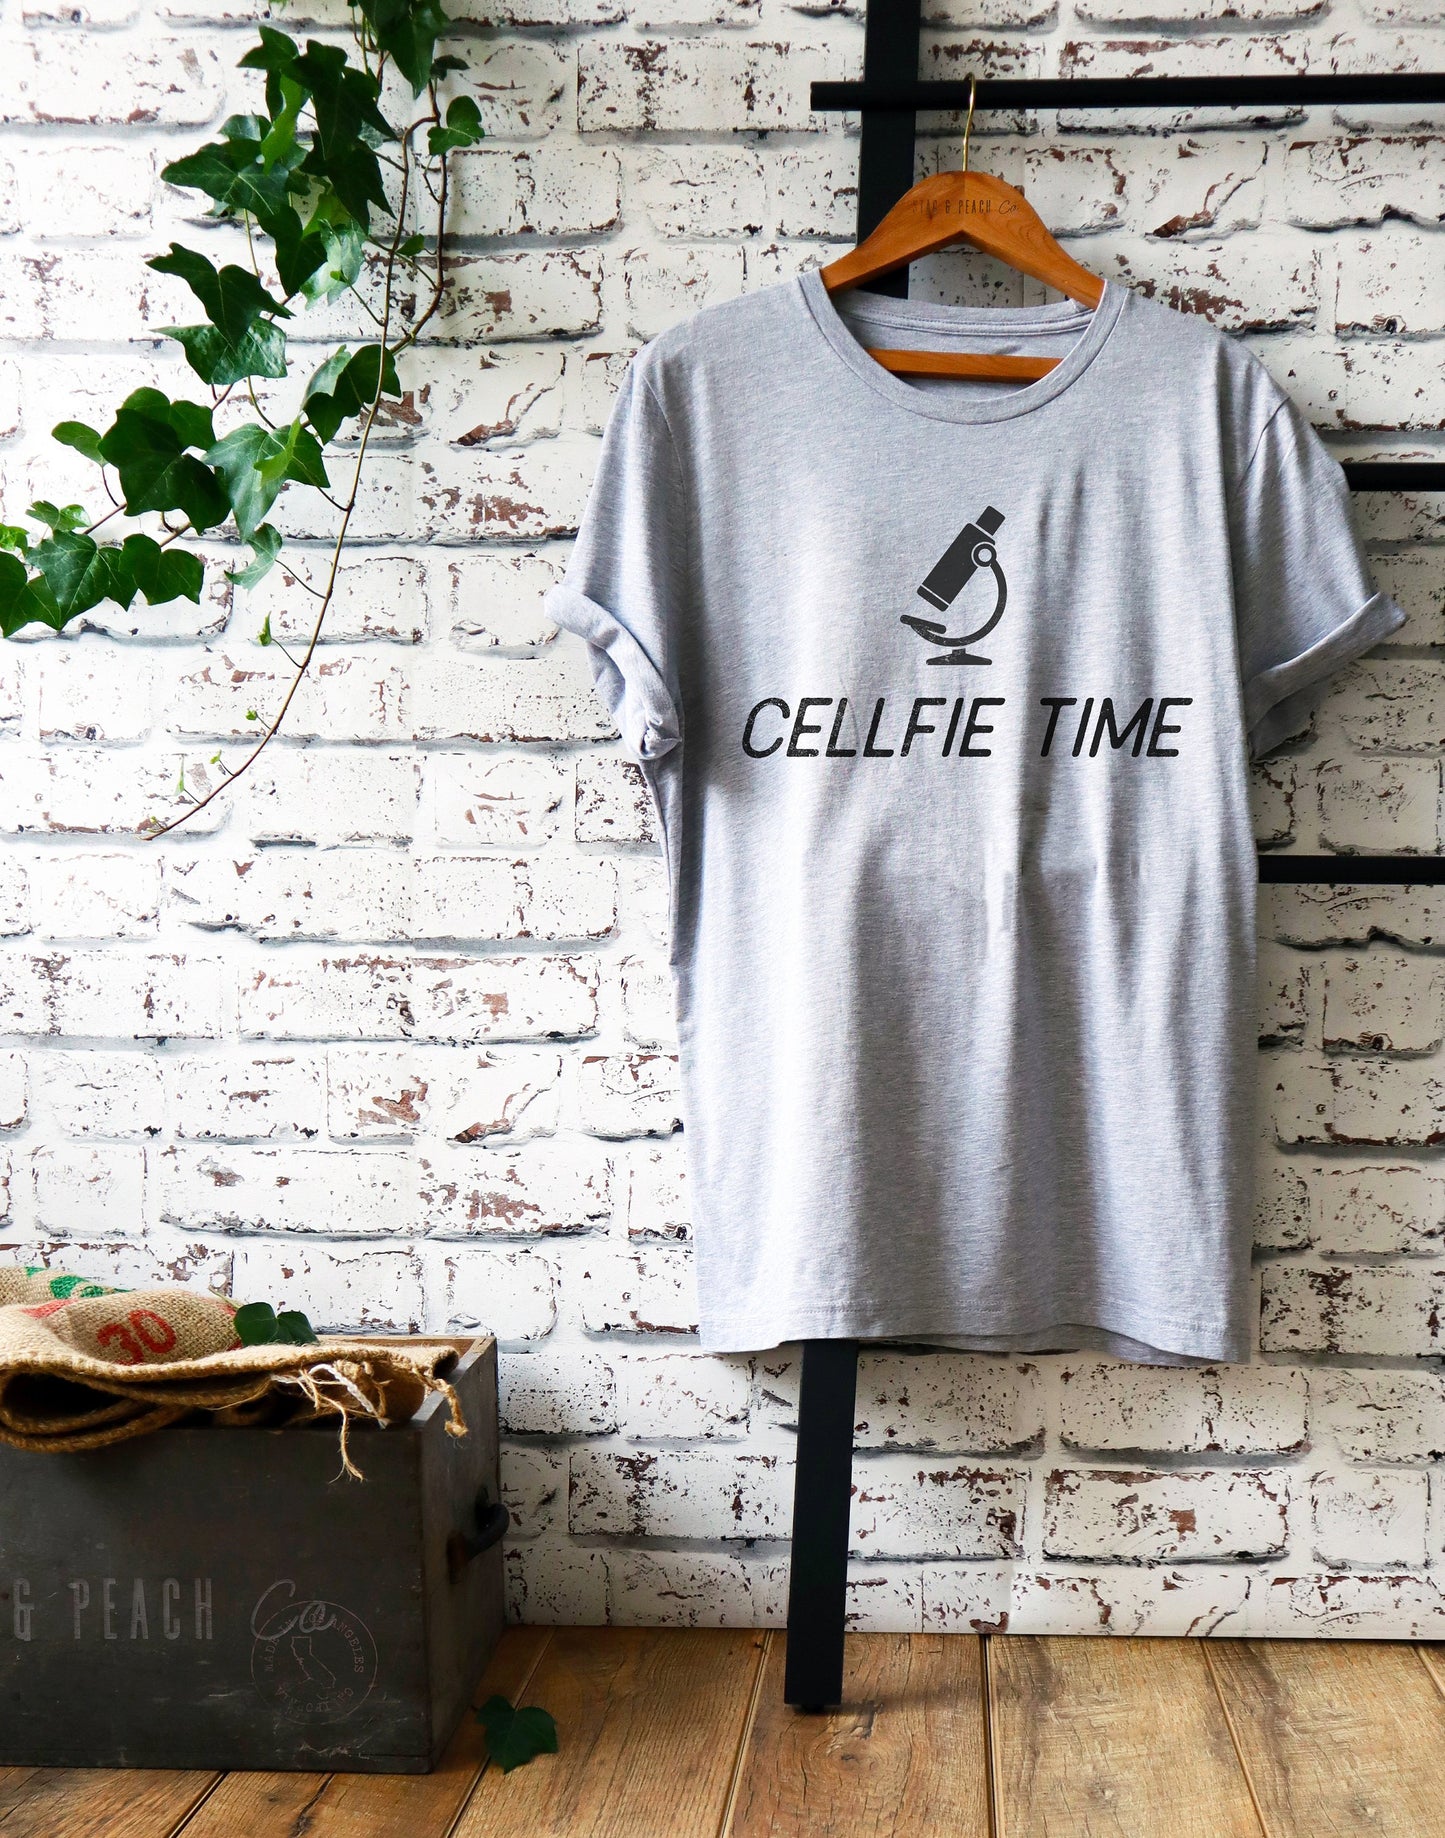 Cellfie Time Unisex Shirt - Microbiologist Shirt, Lab Tech Shirt, Technician Shirt, Science Shirt, Scientist Shirt, Science Gift, Lab Shirt